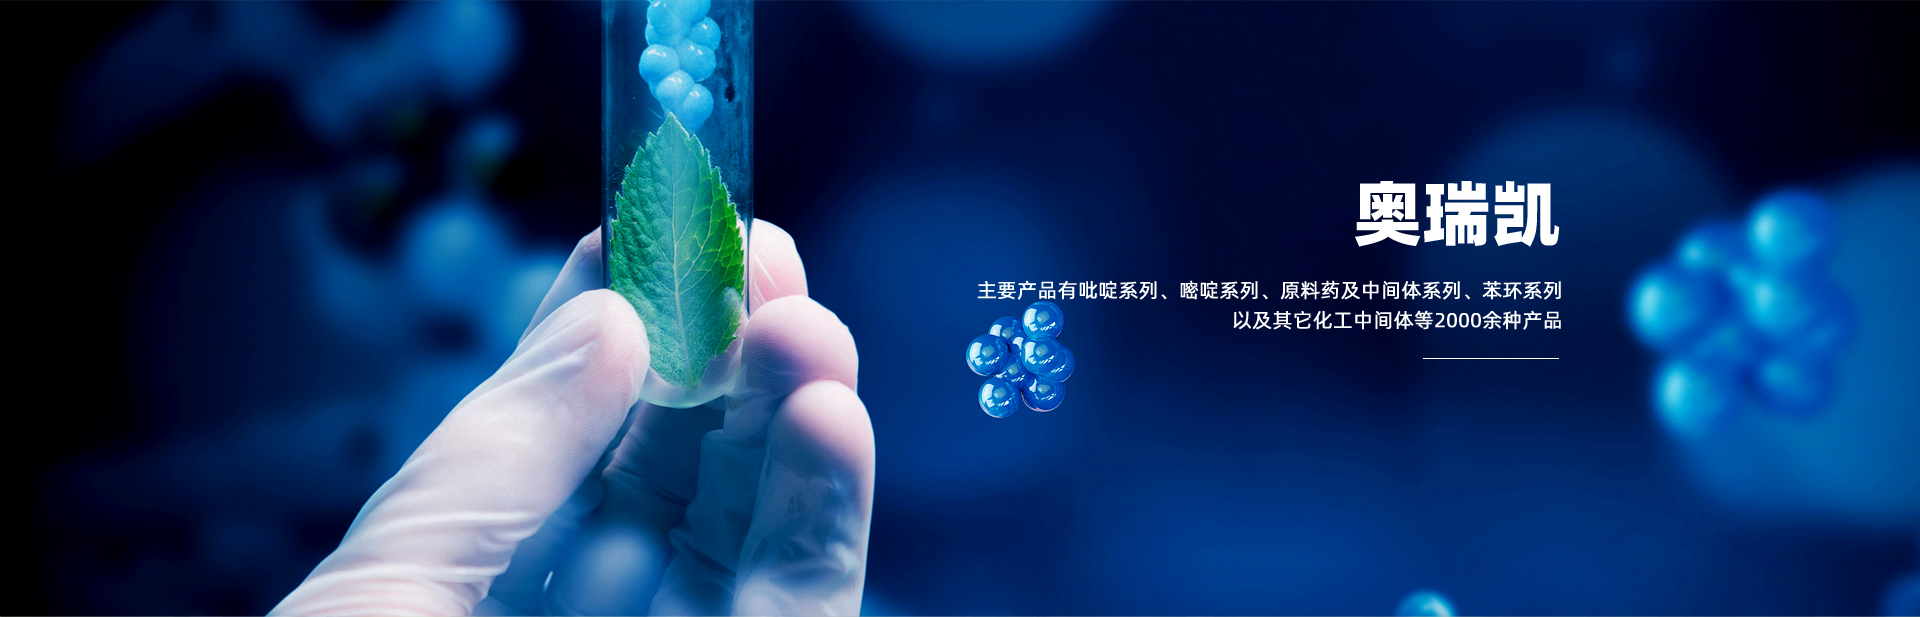 关于当前产品24小时娱乐综合体·(中国)官方网站的成功案例等相关图片